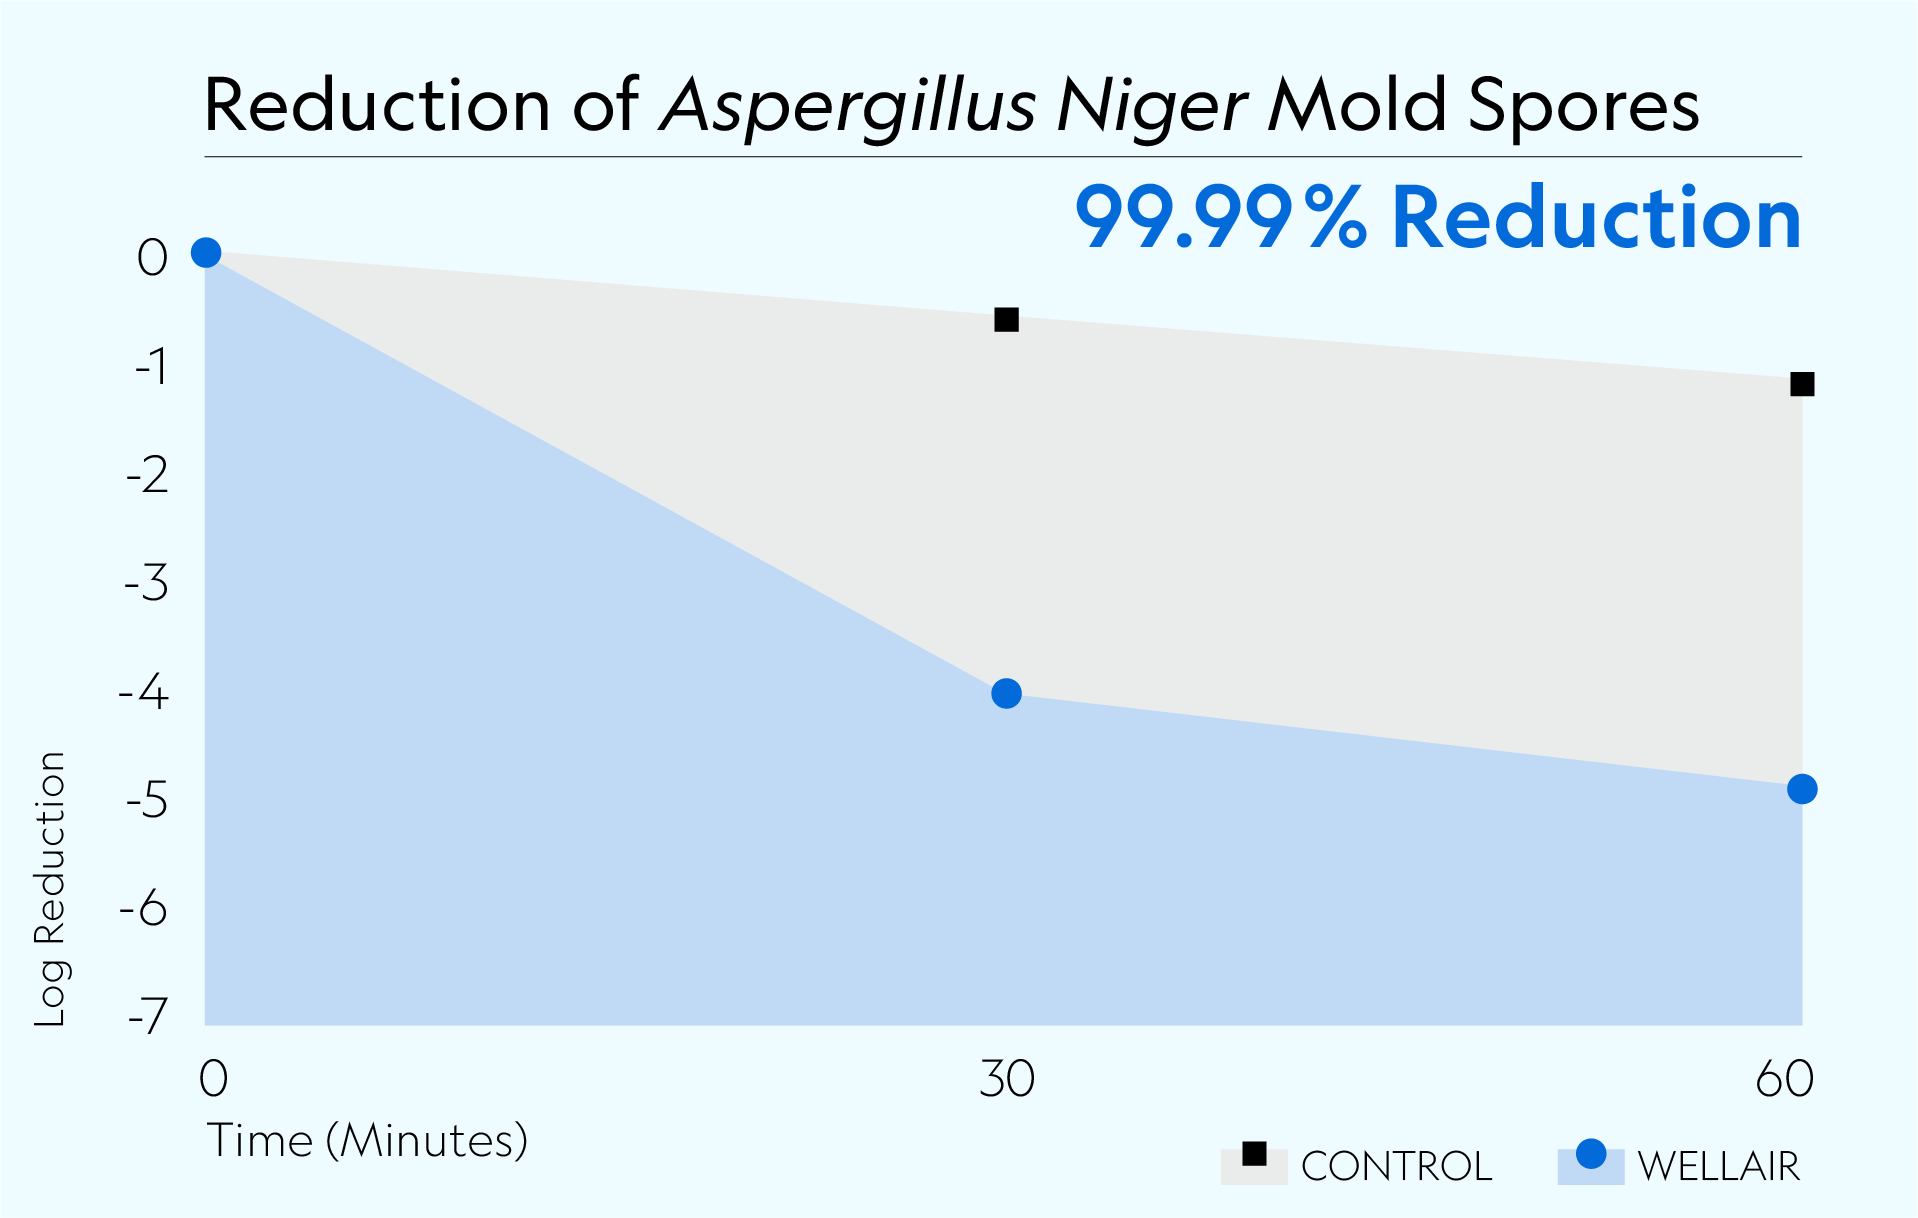 Defend 1050 achieved 99.99% reduction of Aspergillus Niger